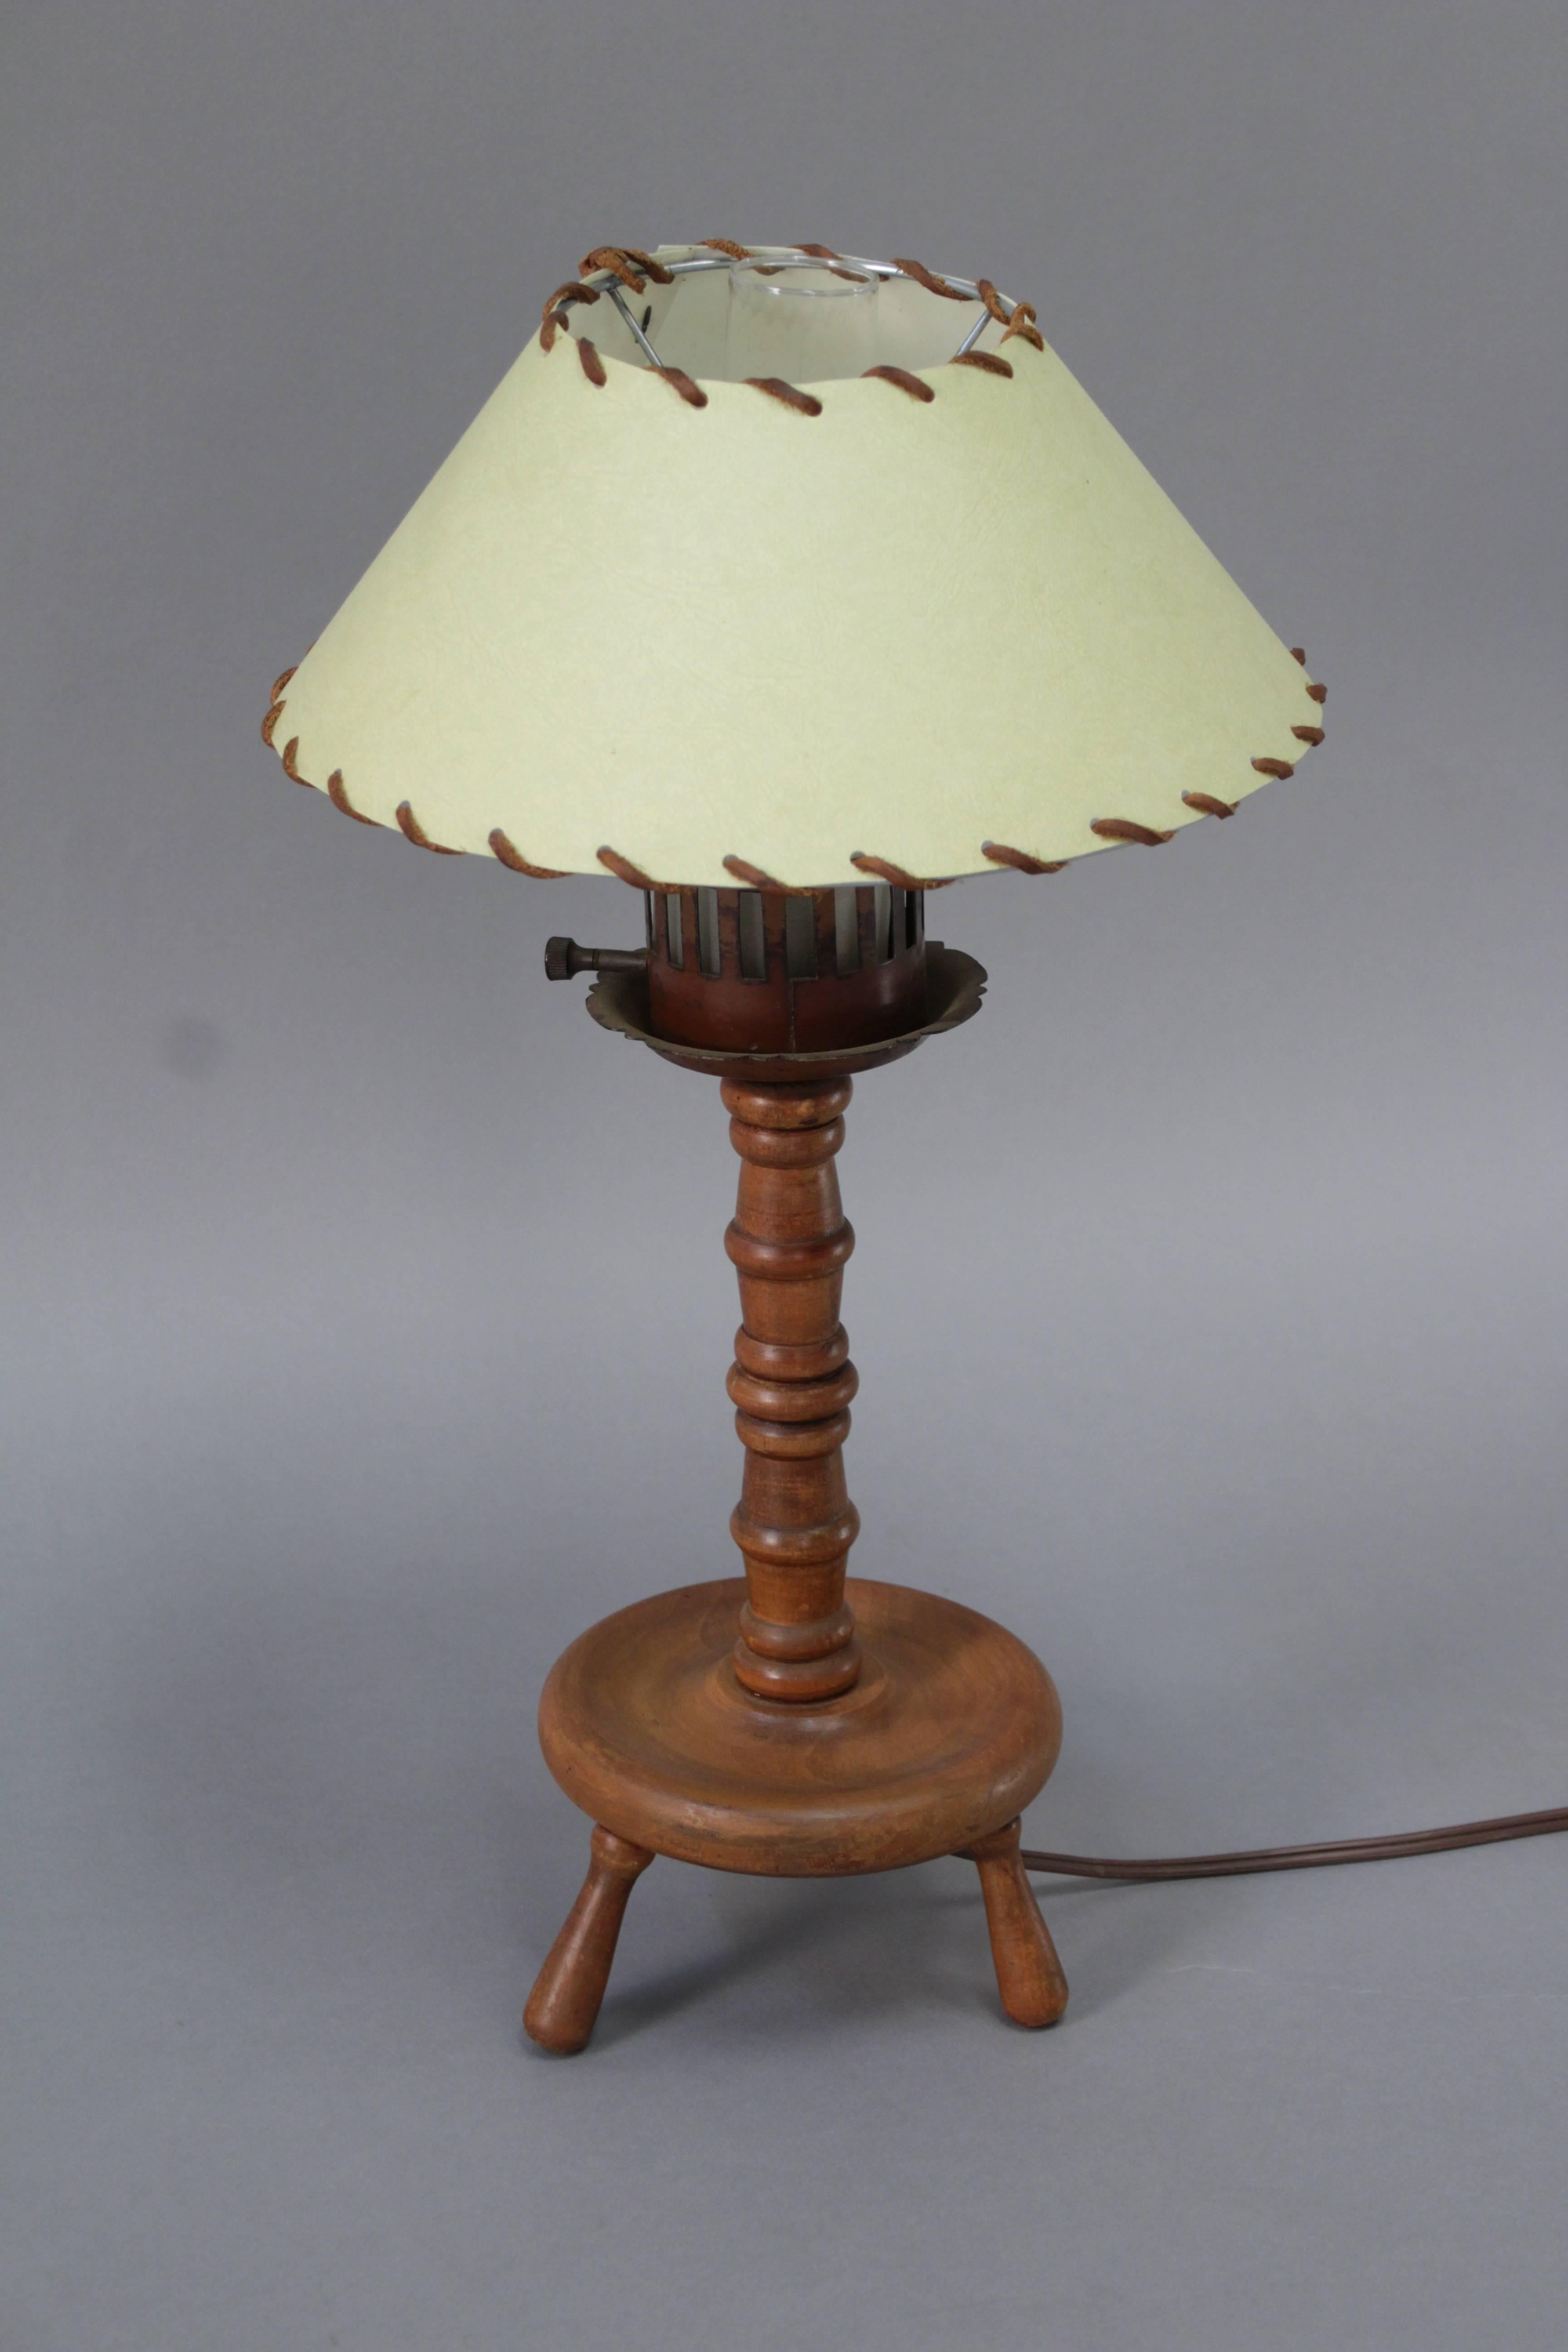 Rancho Monterey period lamp, circa 1930s.